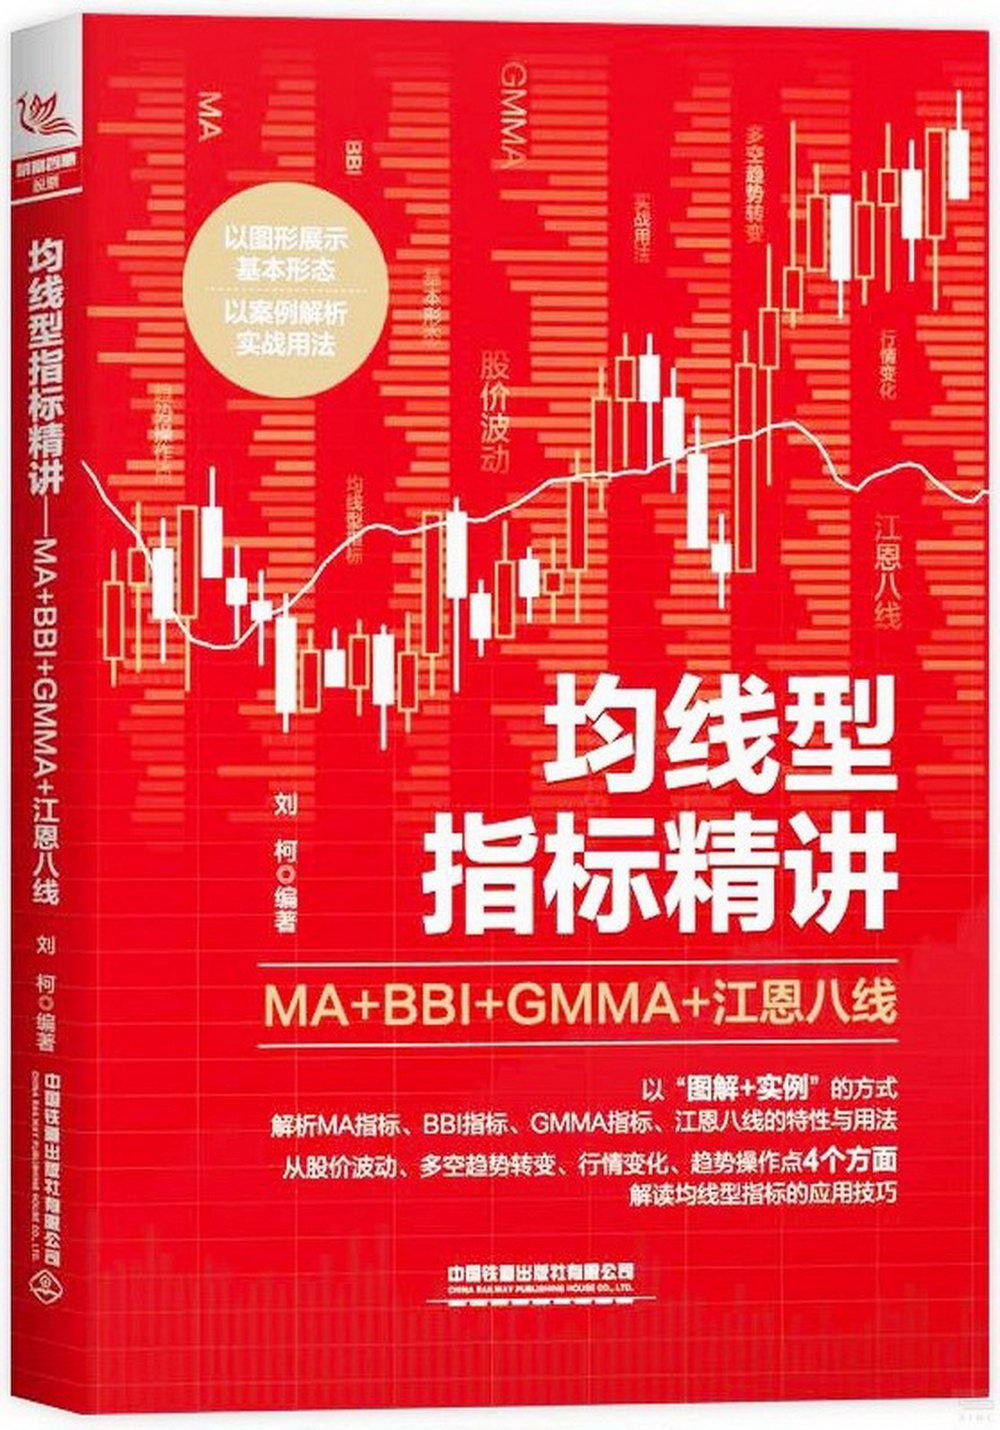 均線型指標精講：MA+BBI+GMMA+江恩八線